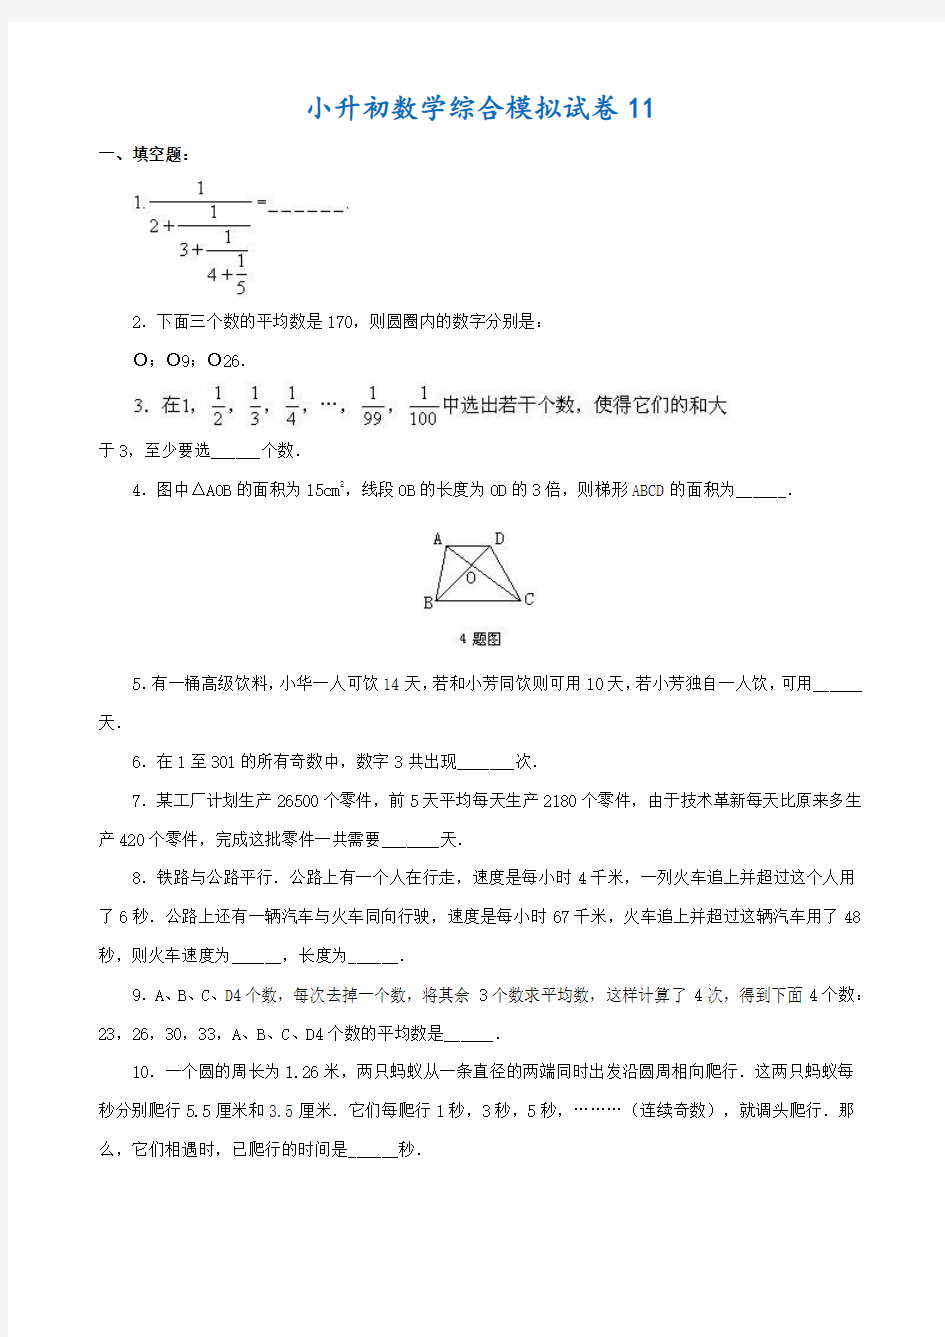 2018-2019肇庆市小升初数学模拟试题(共10套)附详细答案